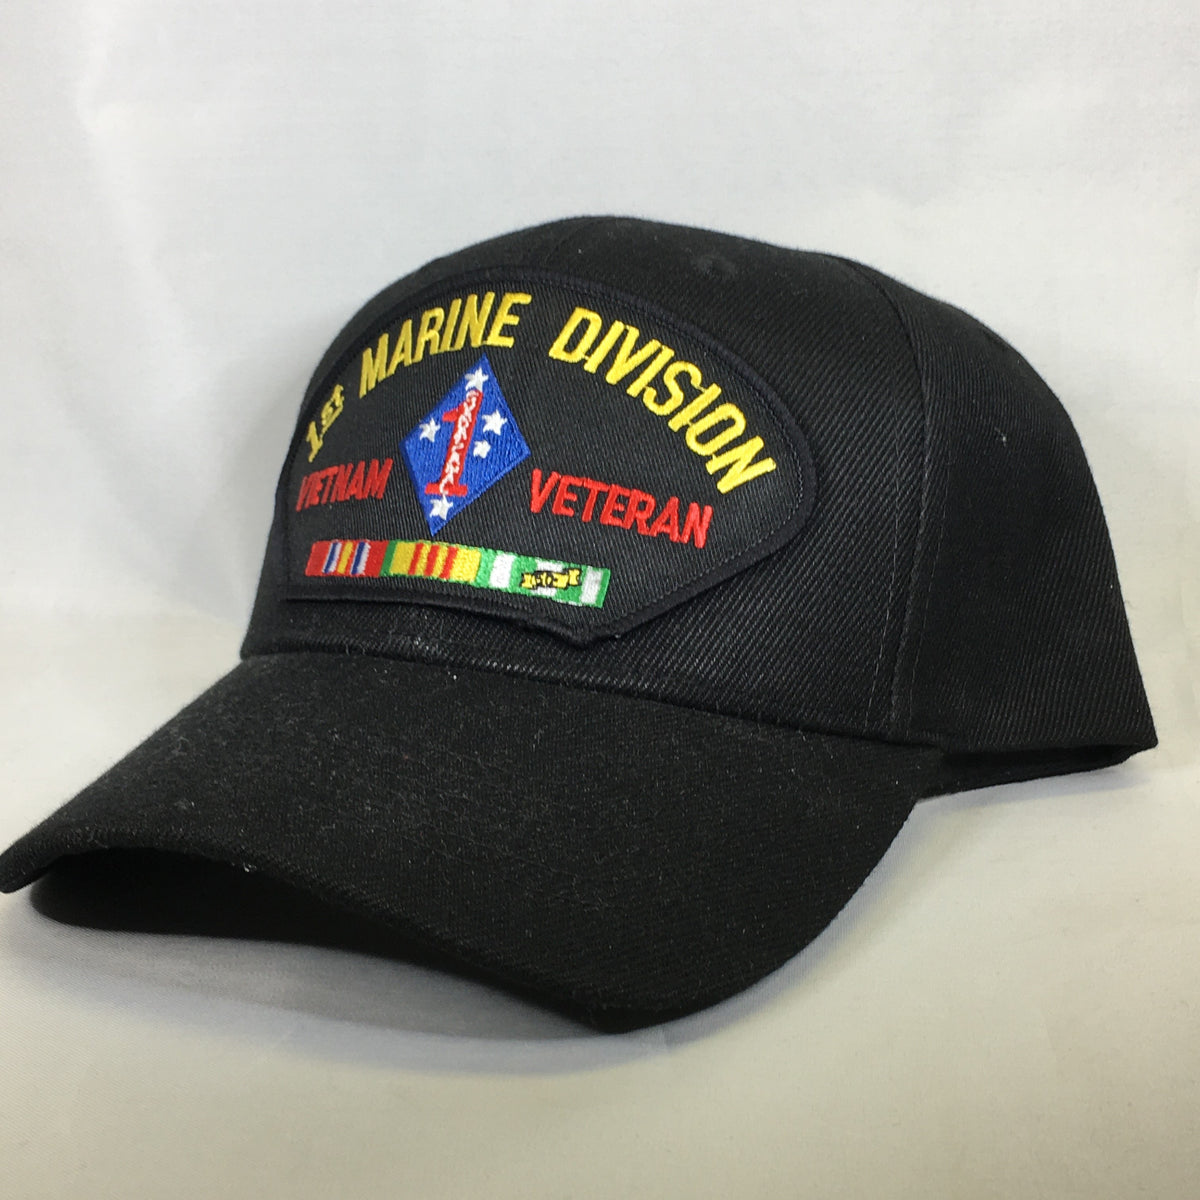 1st Marine Division Vietnam Veteran Cap